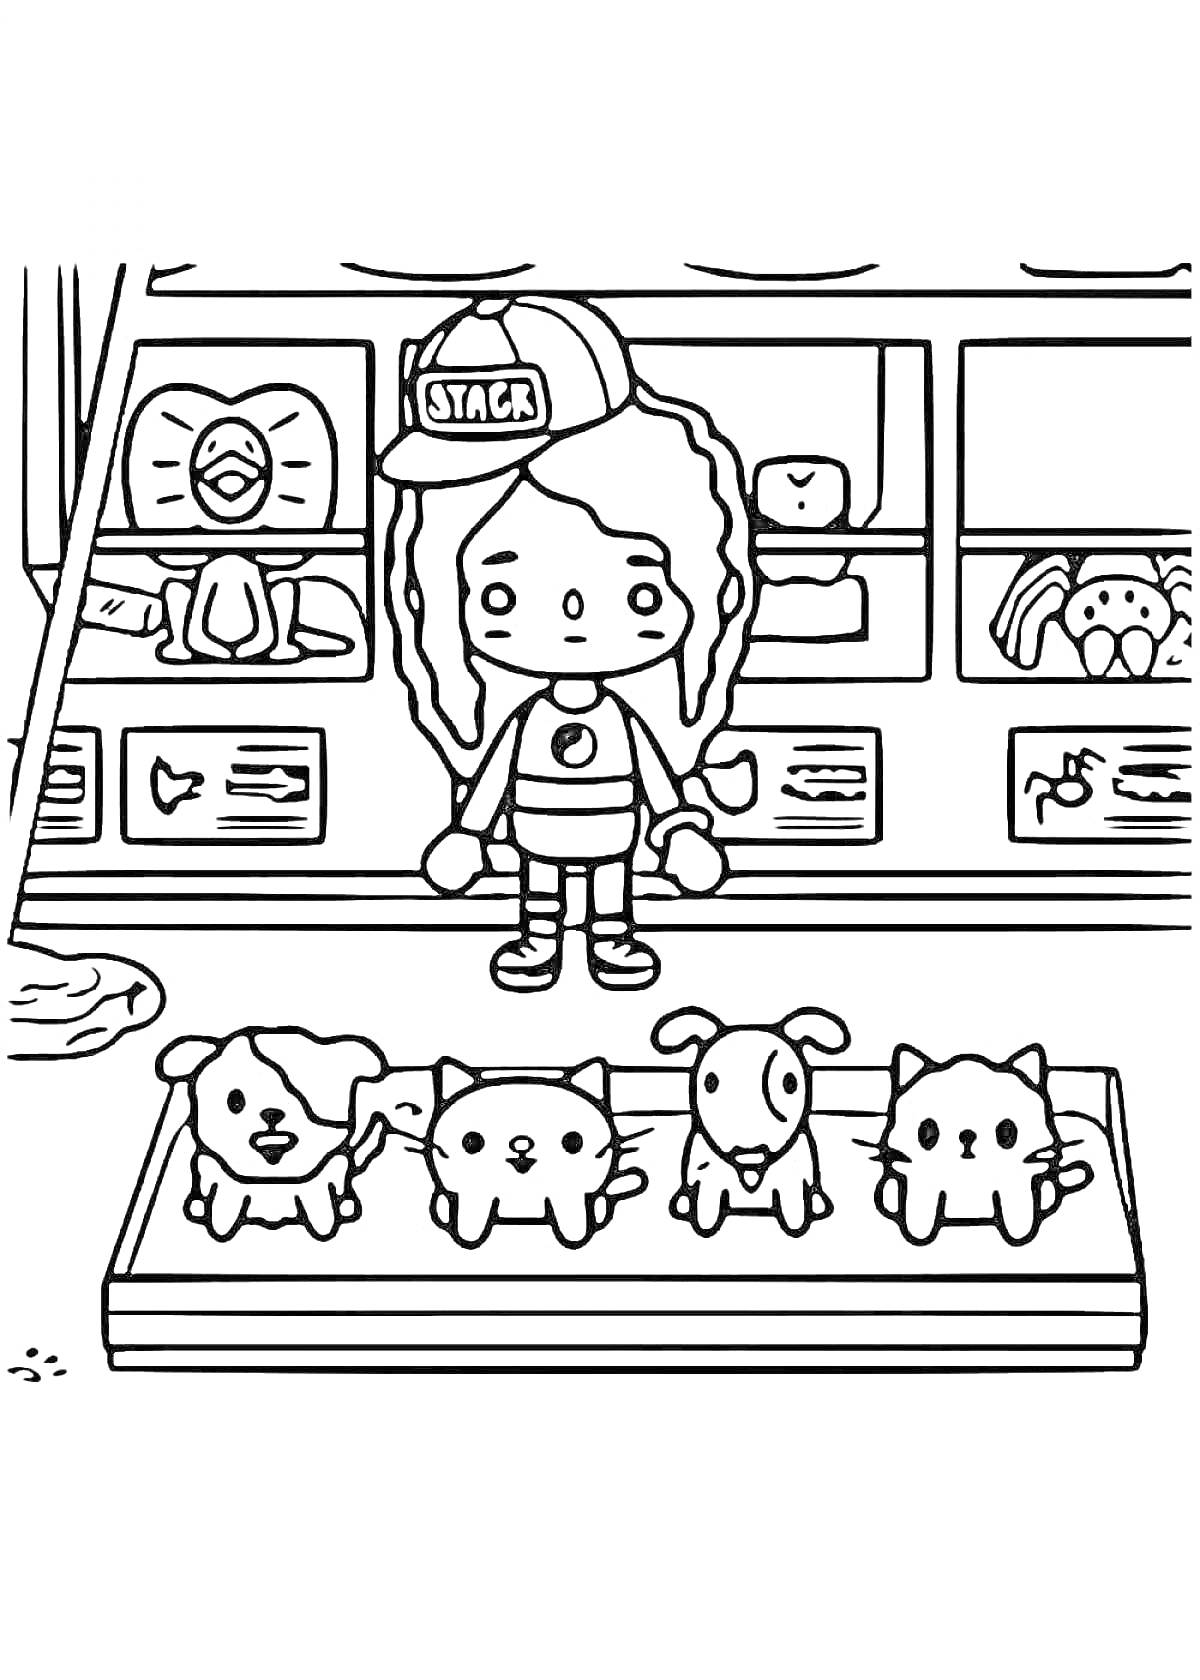 Девочка с длинными волосами и кепкой в магазине с домашними животными, кот за прилавком, четверо щенков на переднем плане